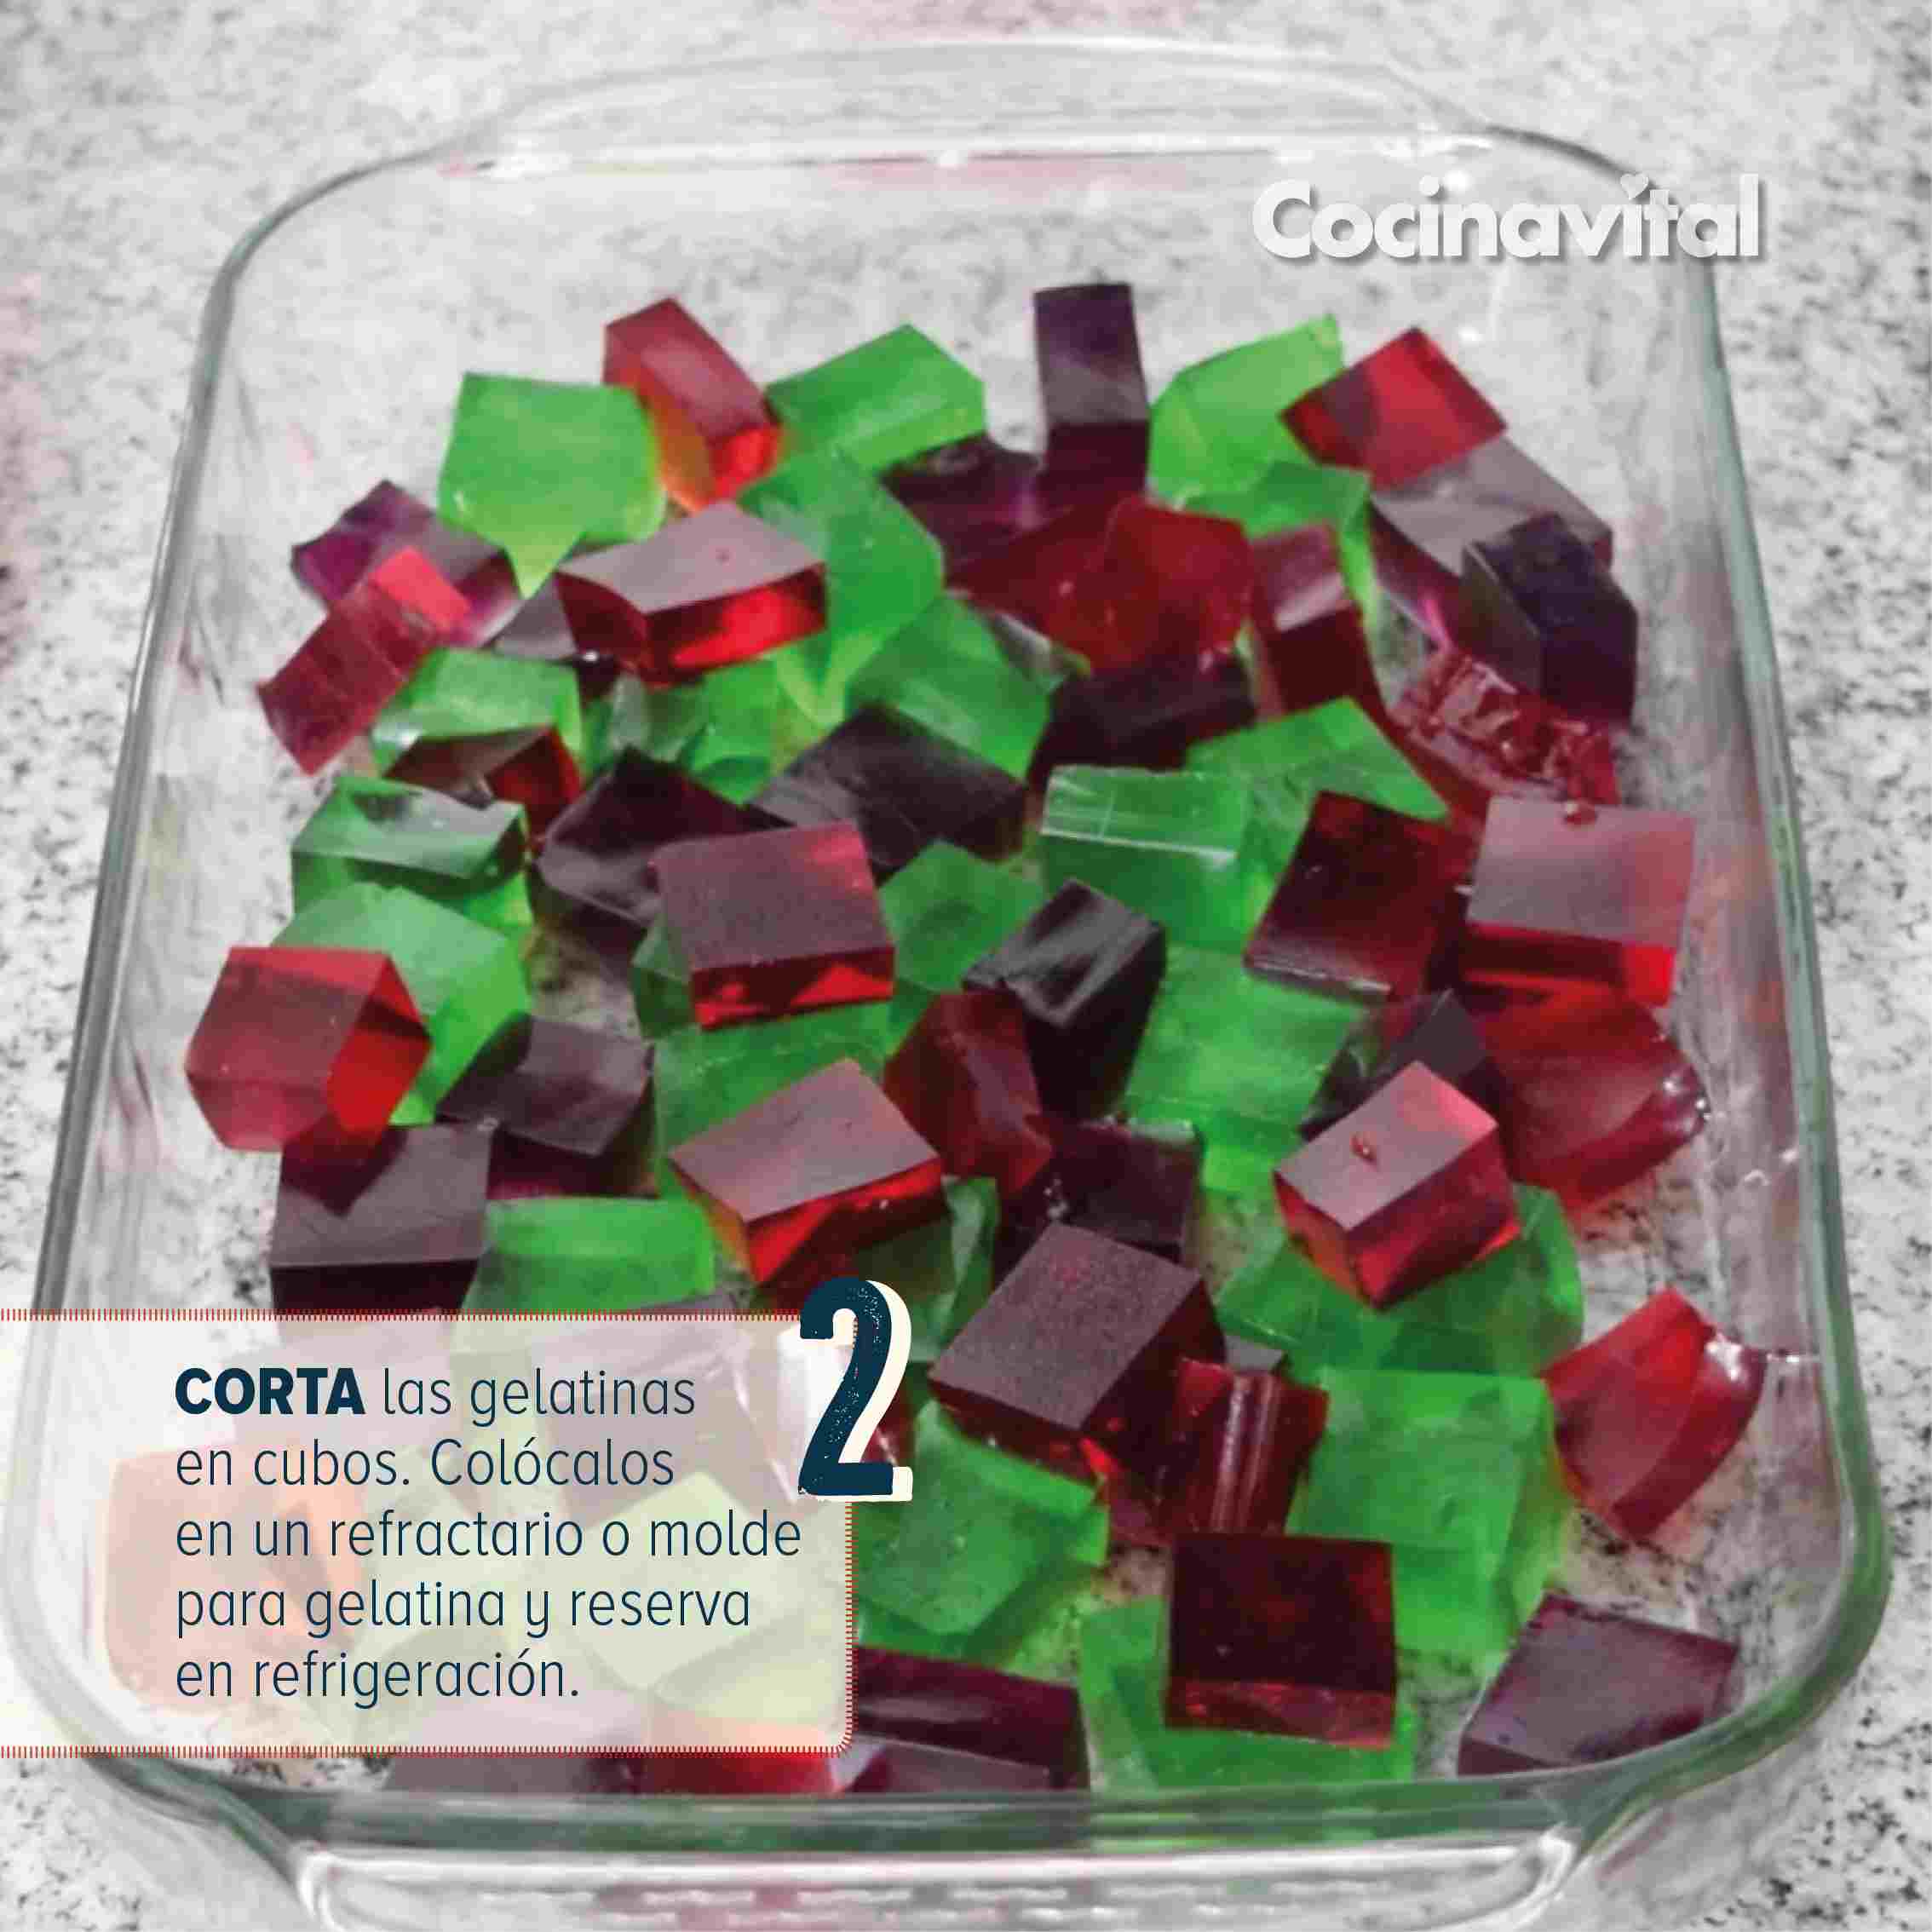 Corta las gelatinas en cubos